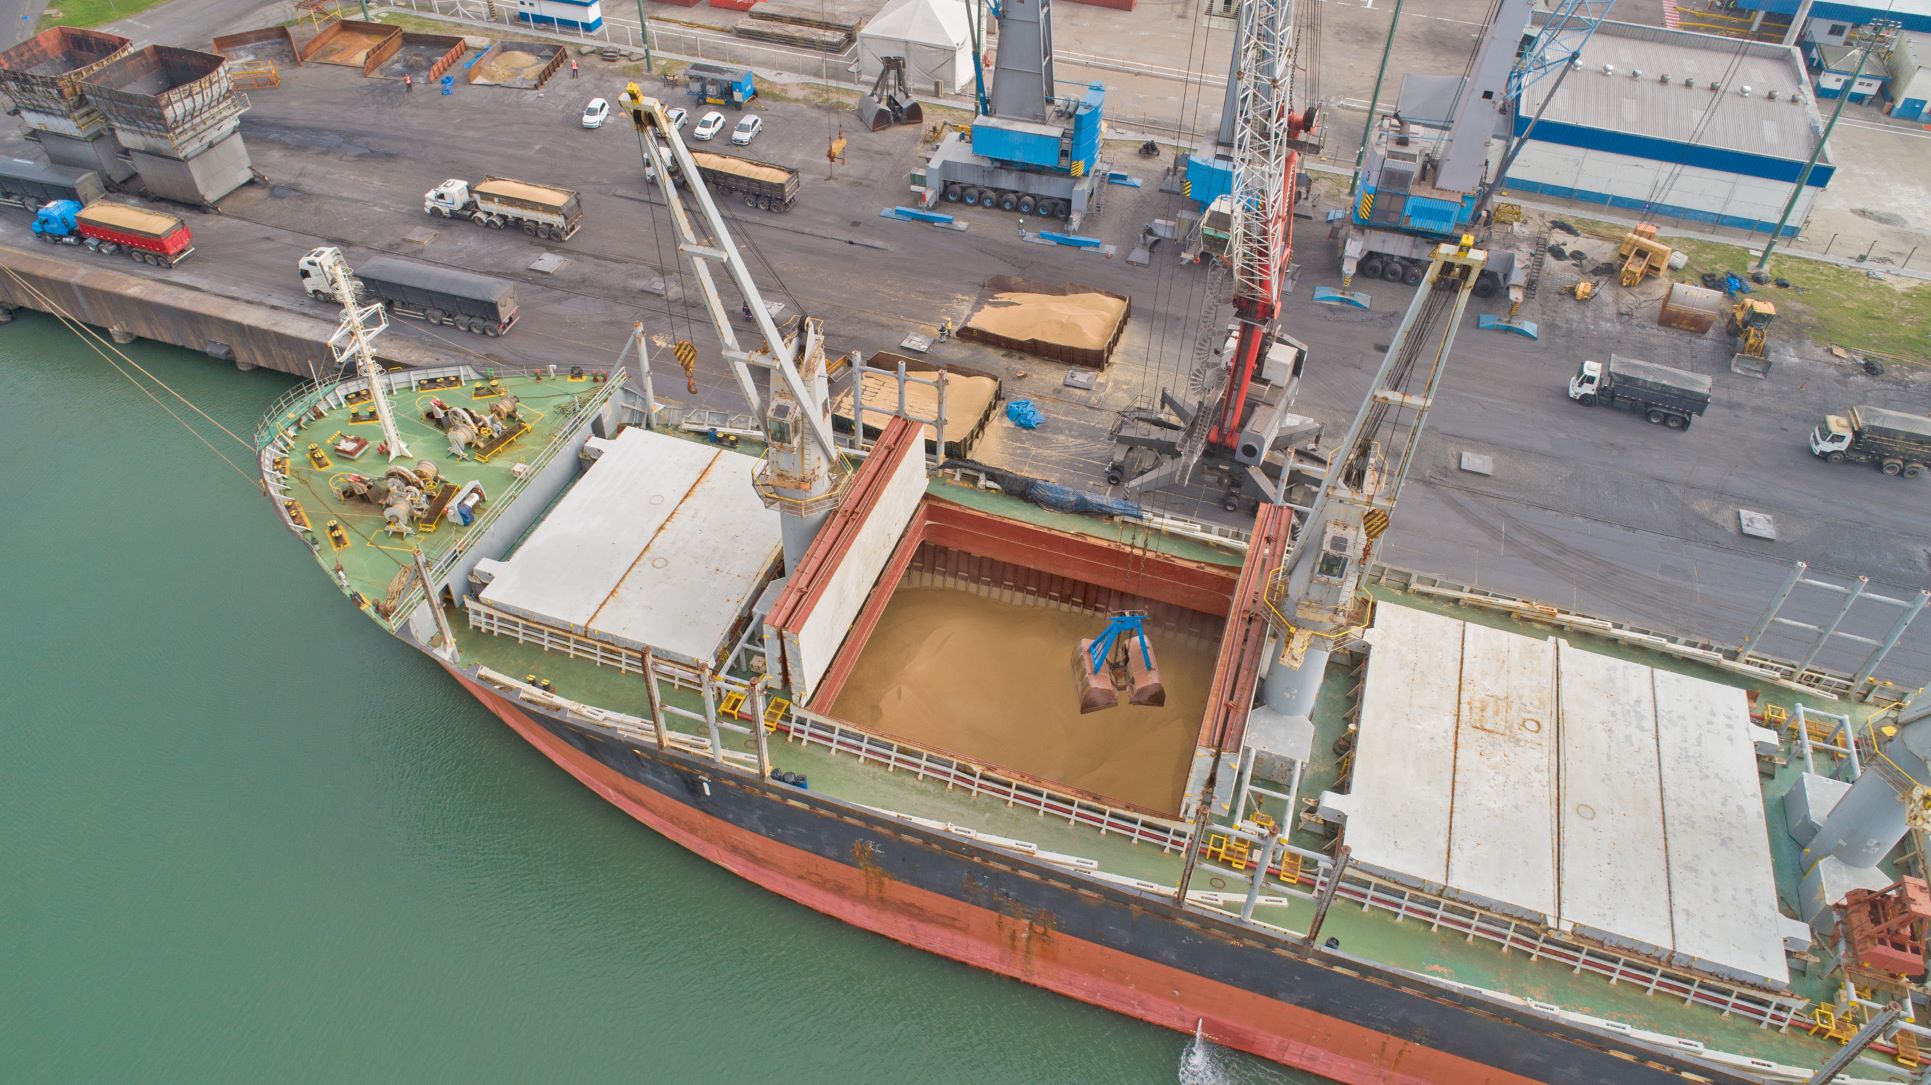 O complexo portuário continua expandindo a sua movimentação de cargas e, nesta semana, finalizará a exportação de 16,5 mil toneladas de pellets de madeira que sairão do Porto de Imbituba com destino ao mercado europeu no navio Agia Sofia.